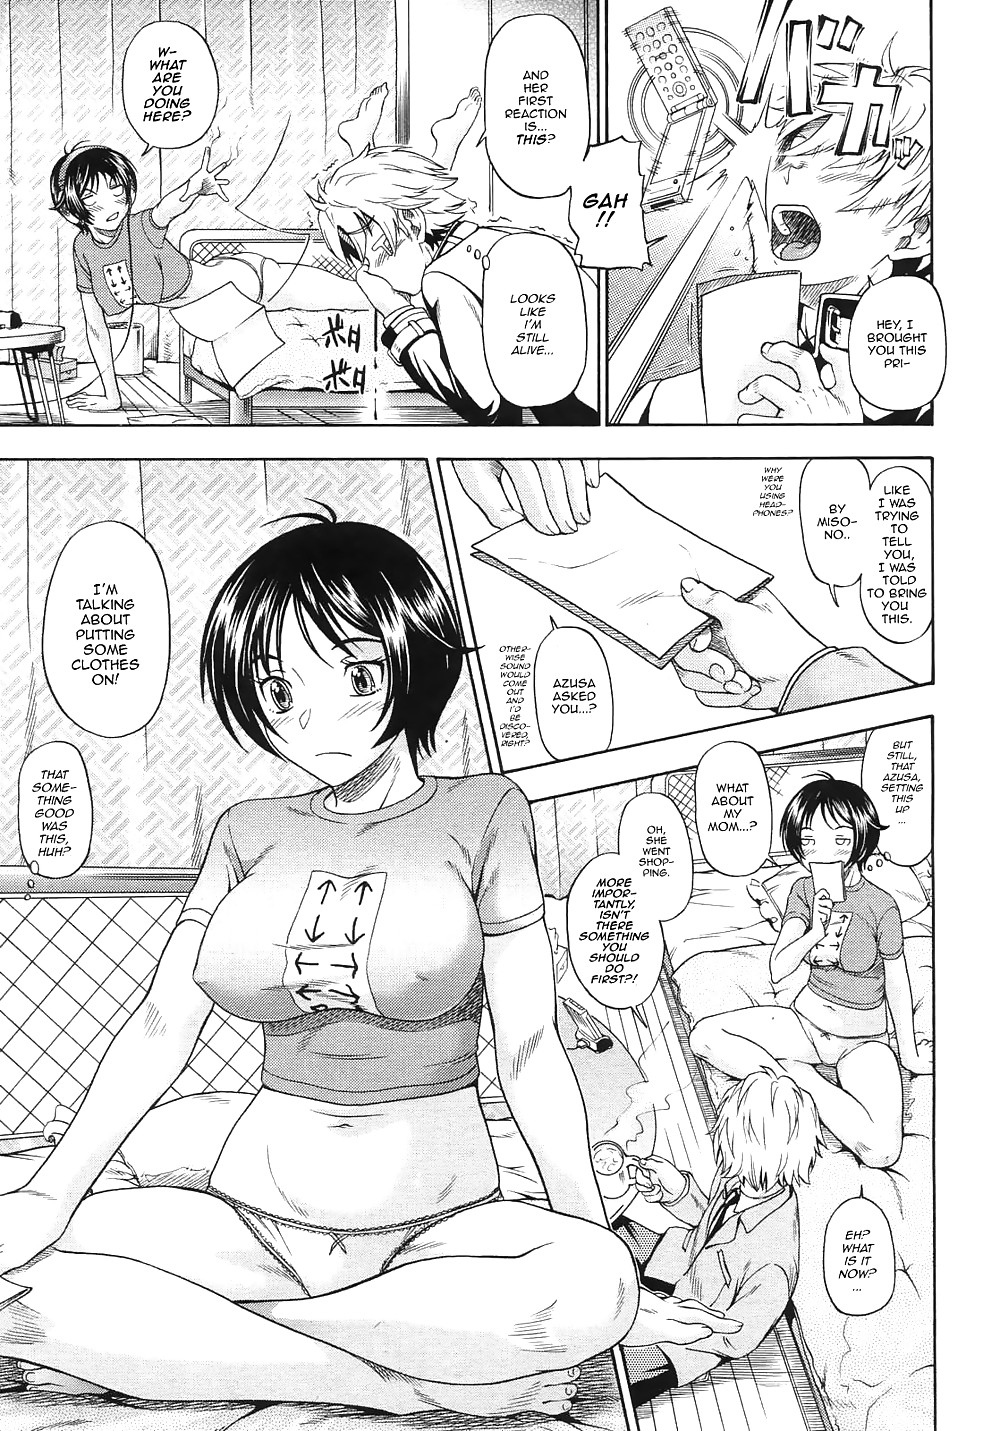 (fumetto hentai) fukudada opere erotiche #1
 #21011662